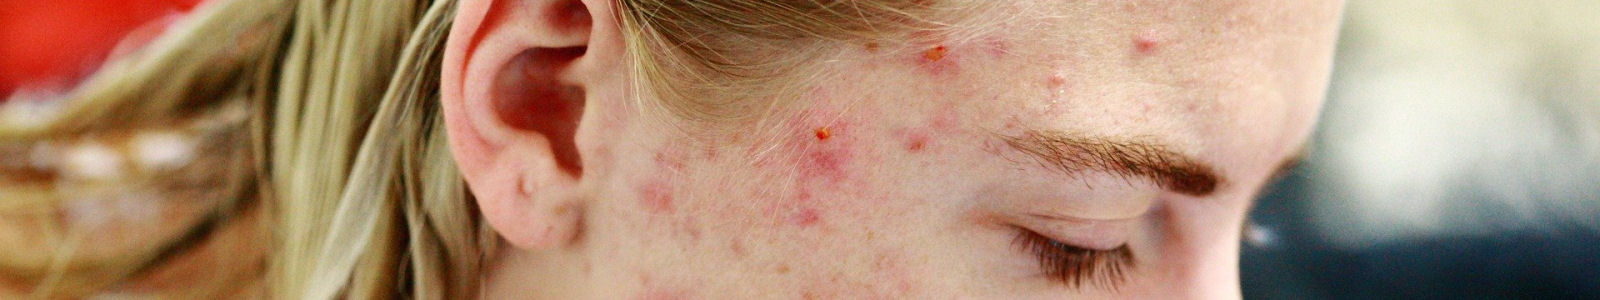 Comment lutter contre l'acné?